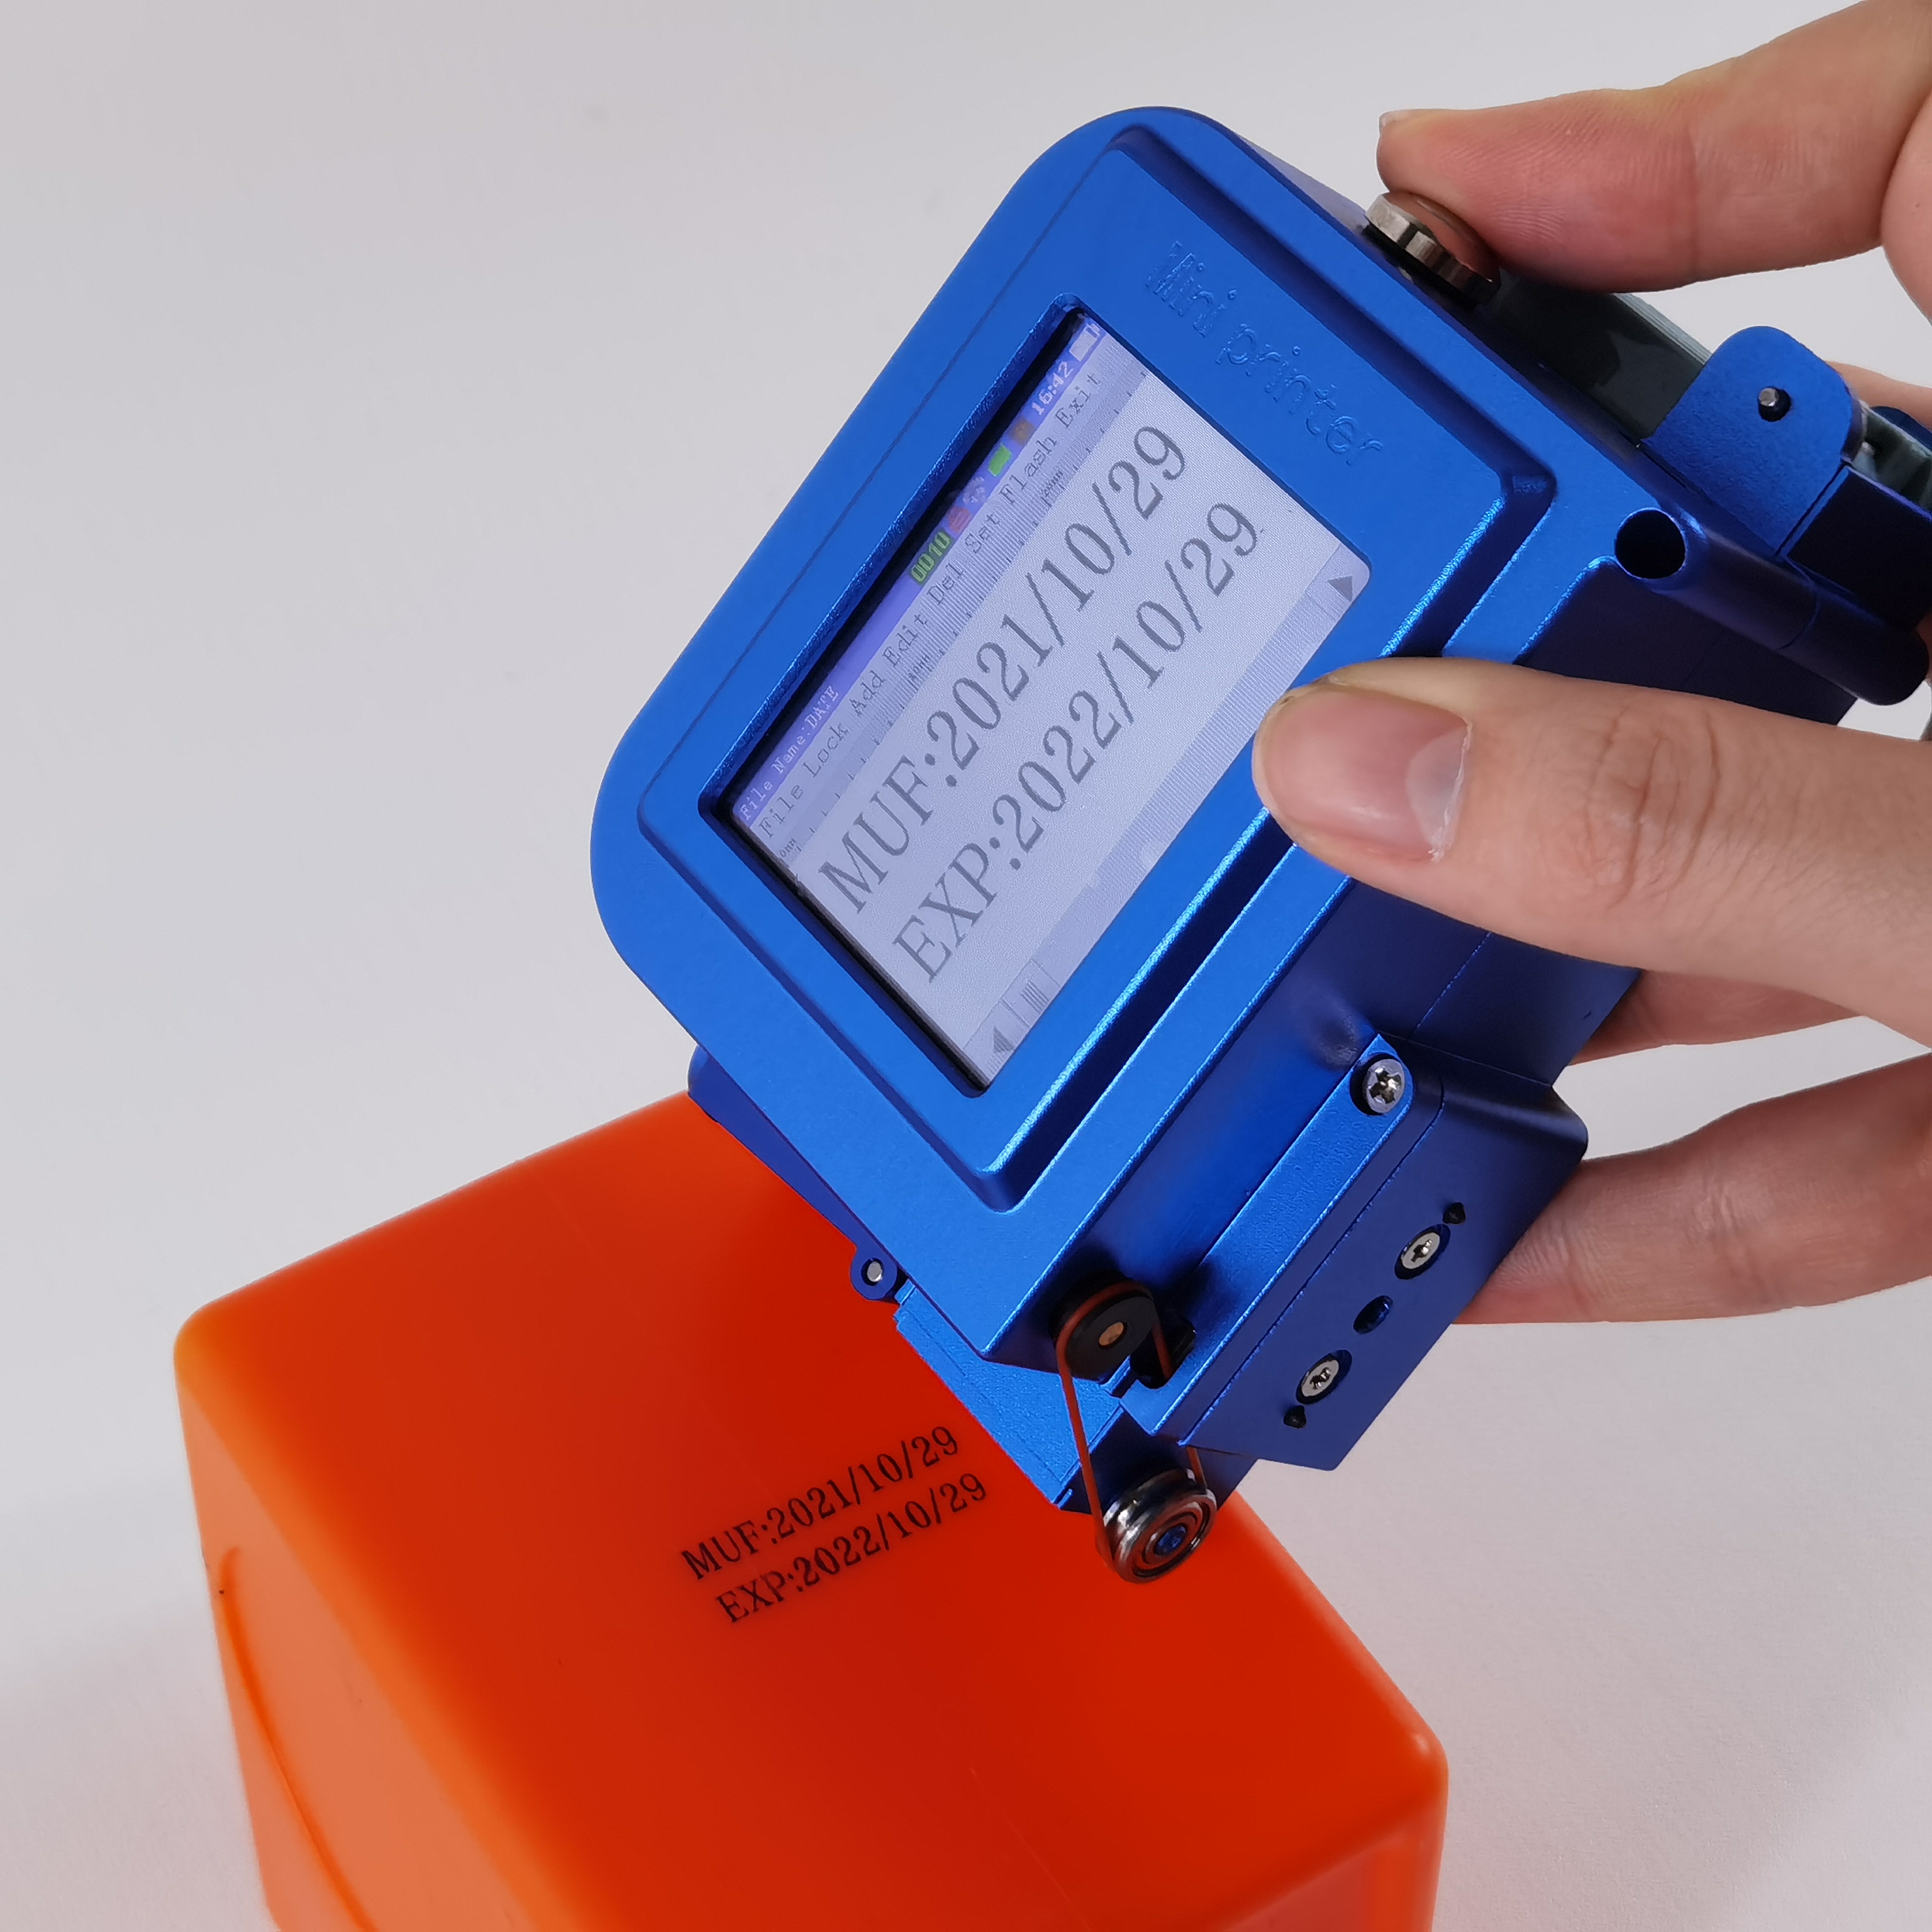 BTMark - Mini imprimante à jet d'encre portable TIJ Date d